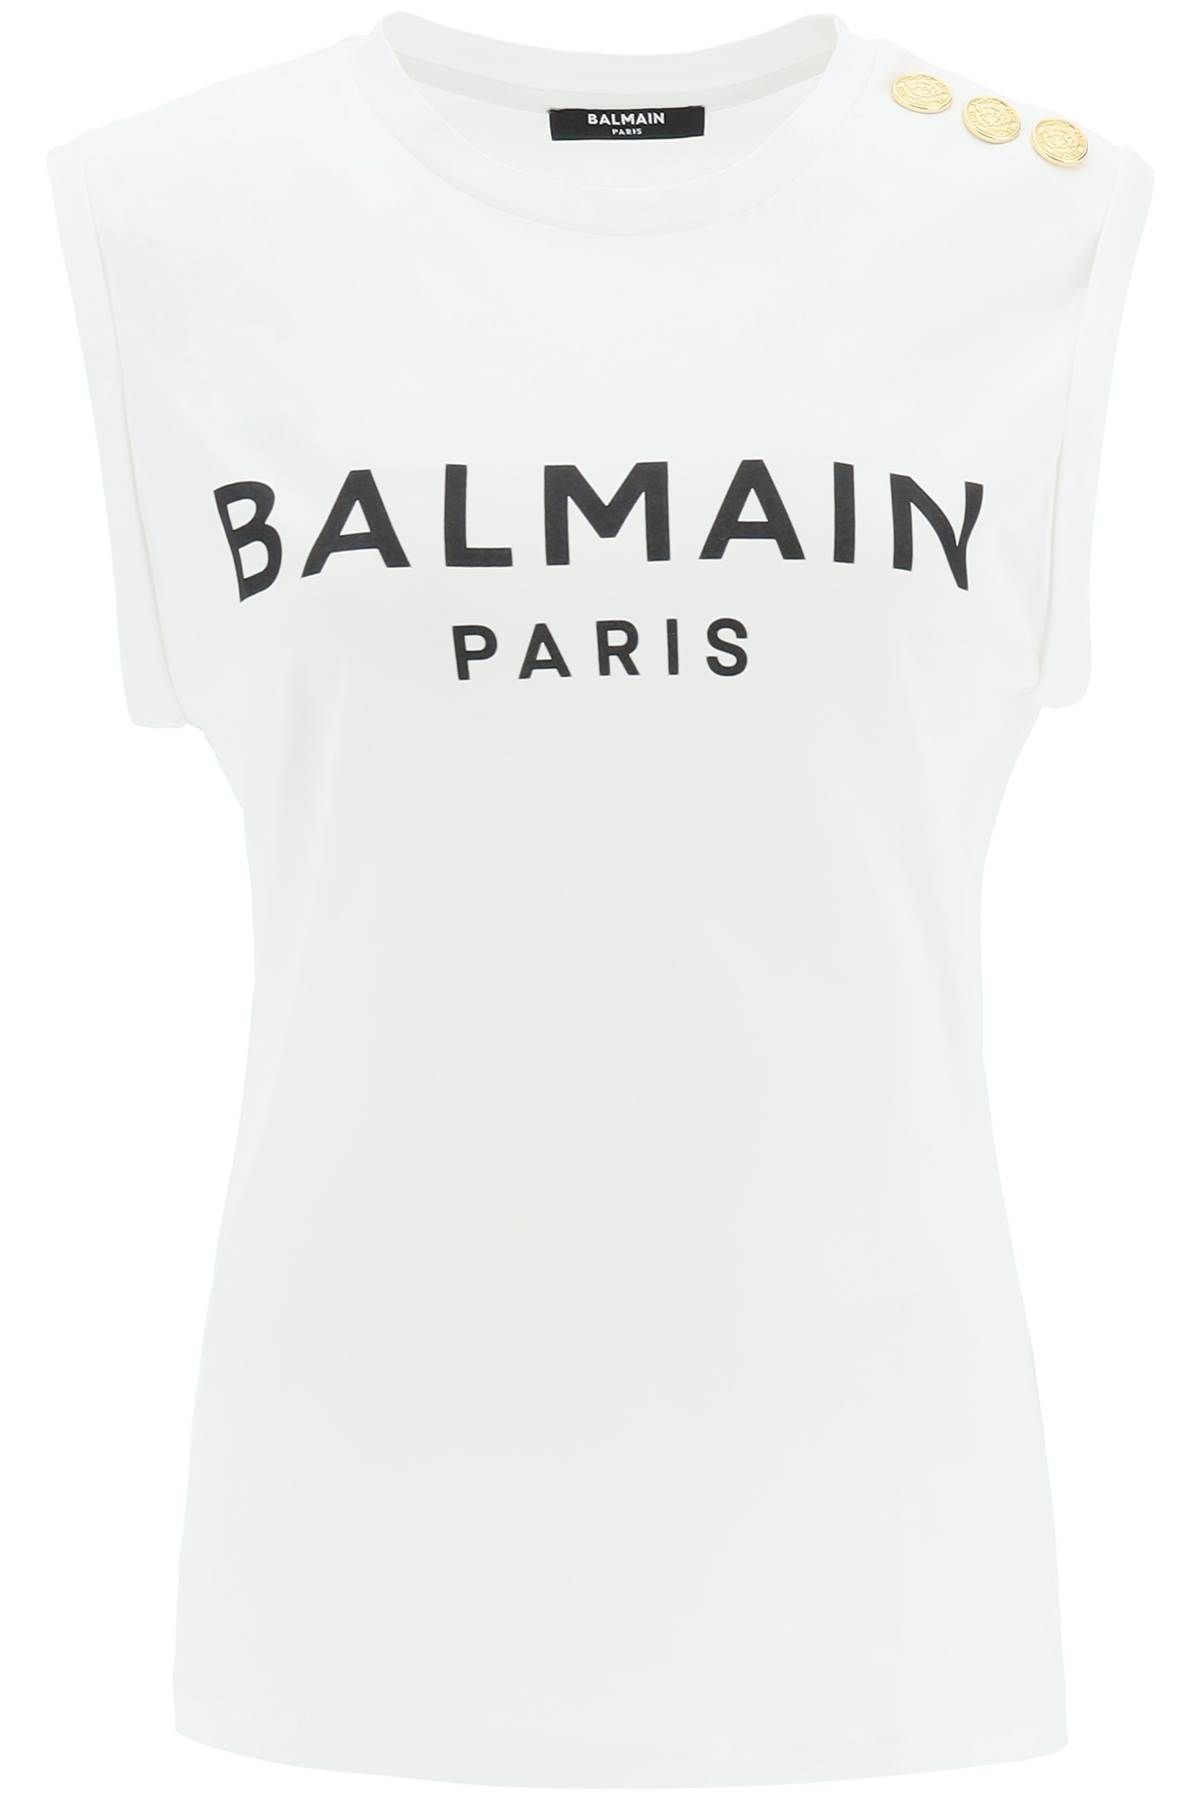 Balmain BALMAIN logo top with embossed buttons